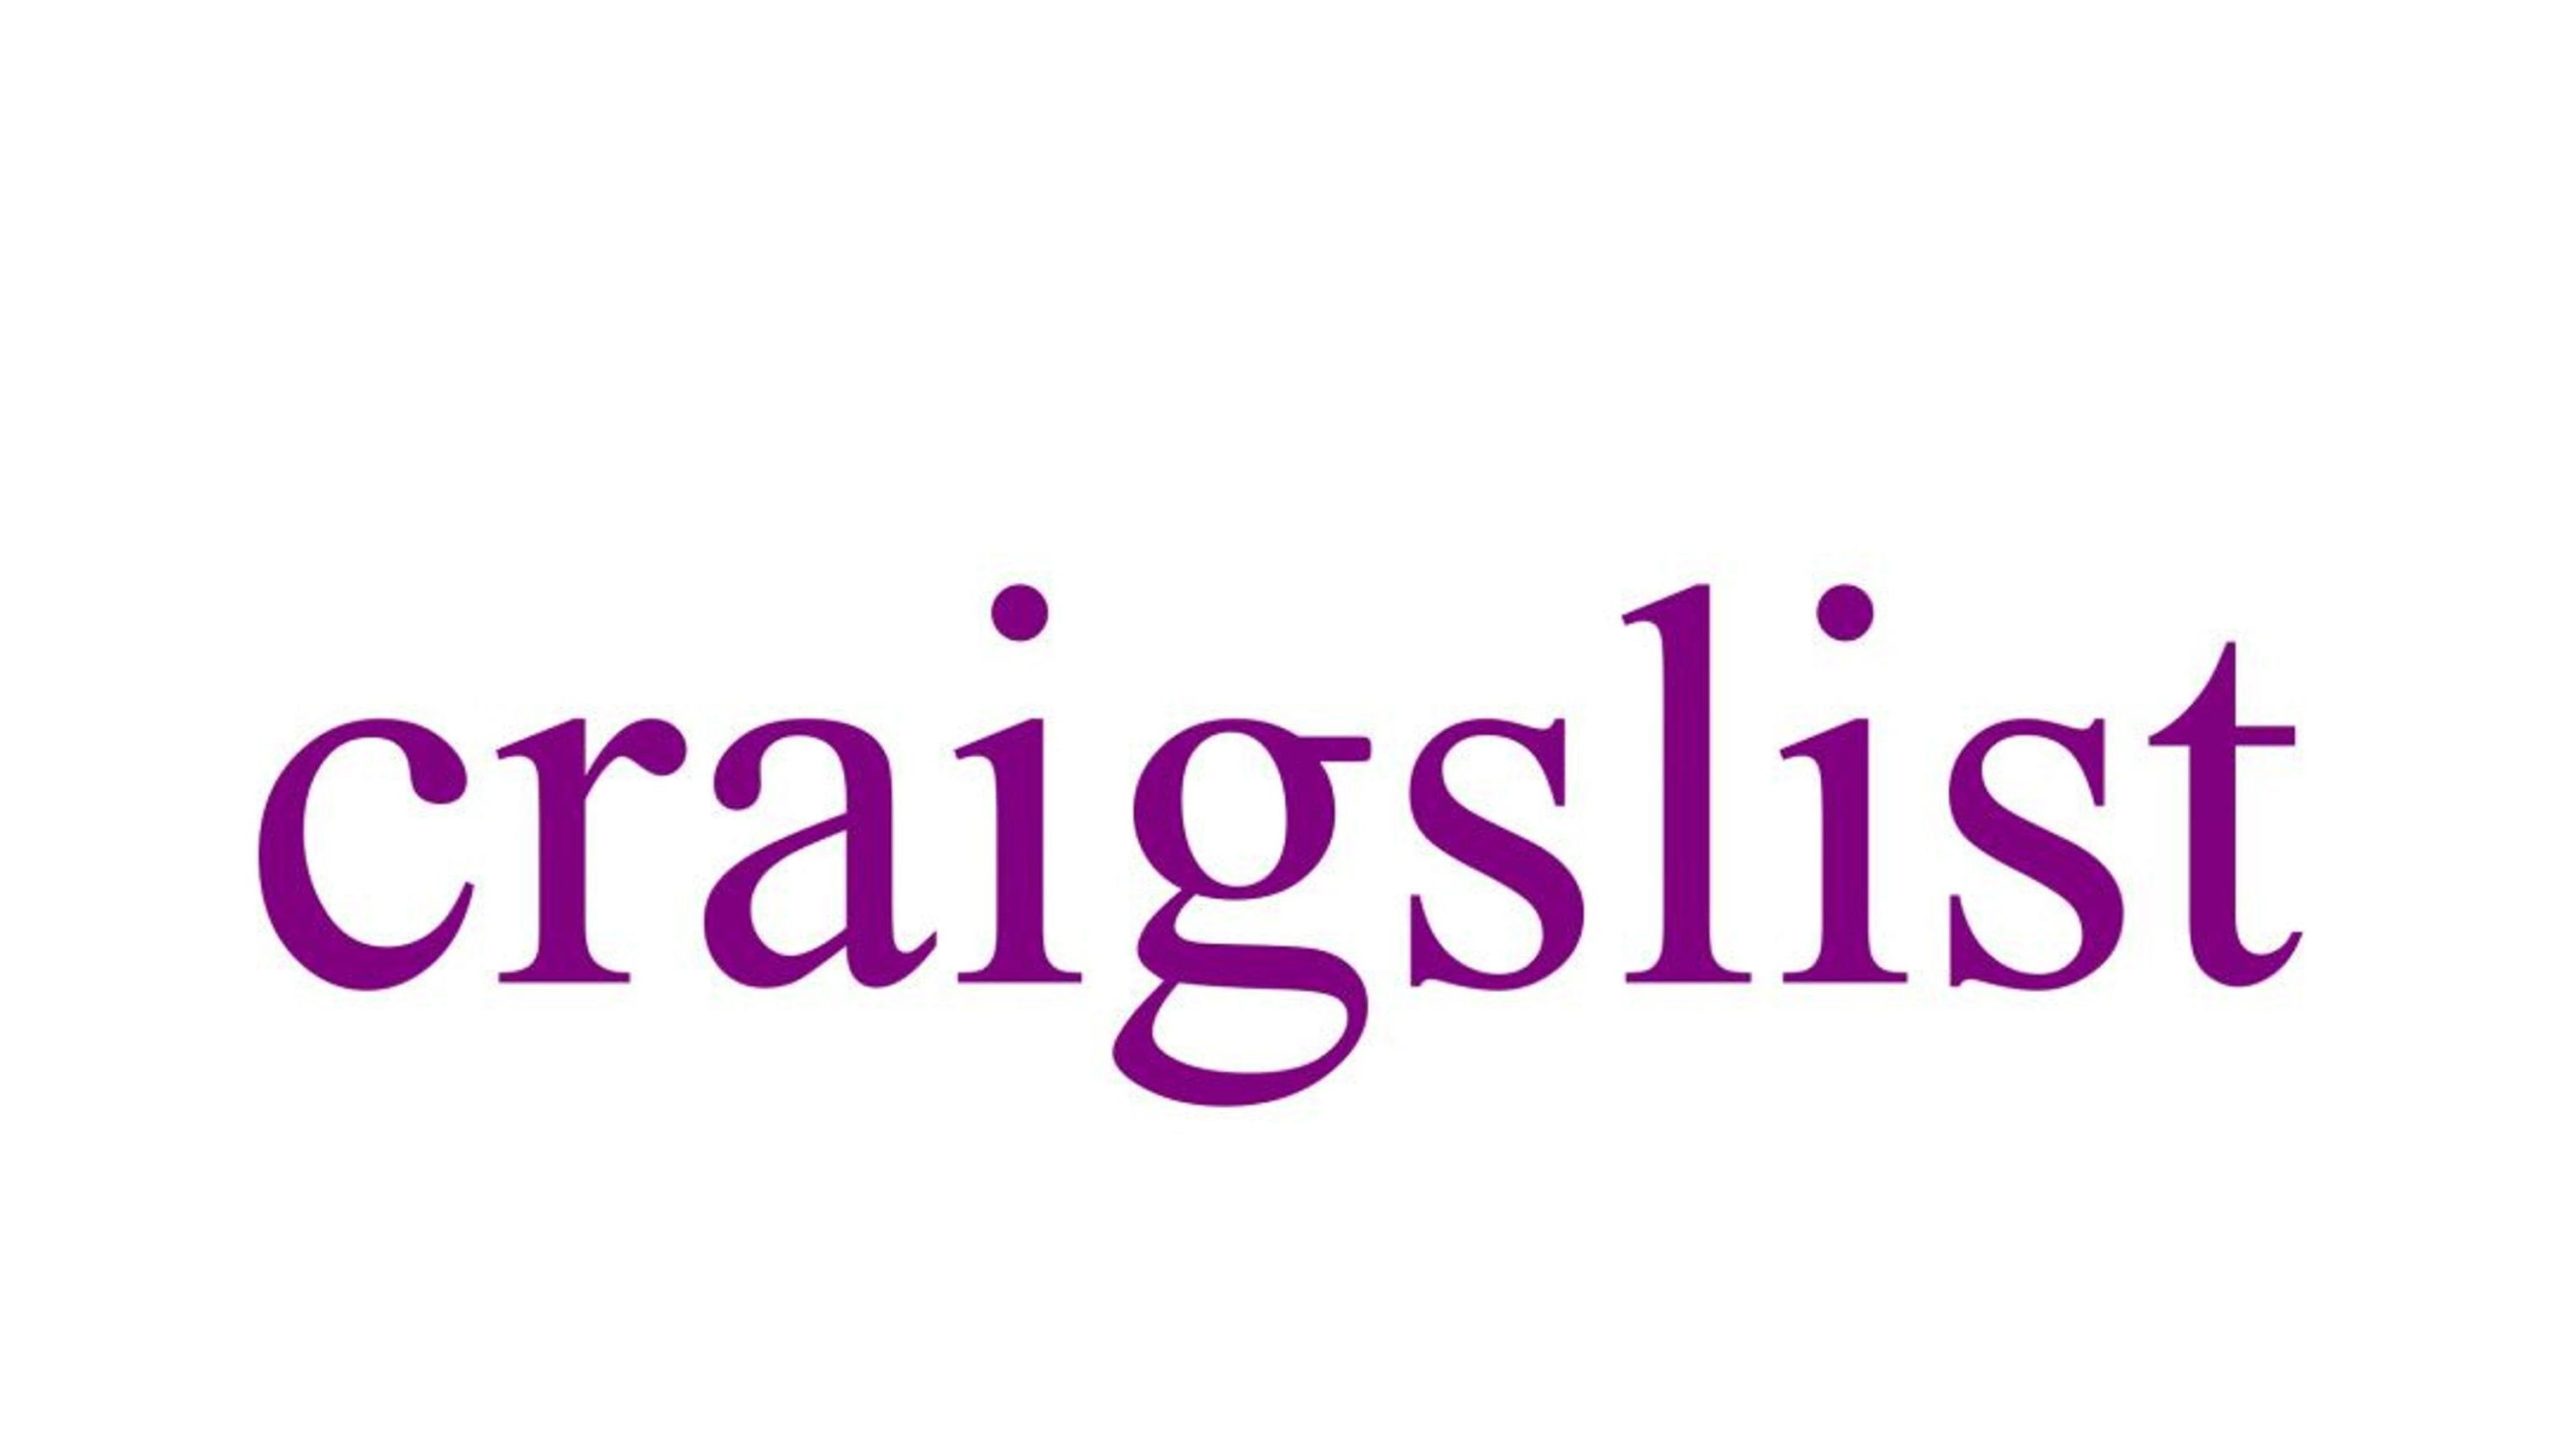 Craigslist logo